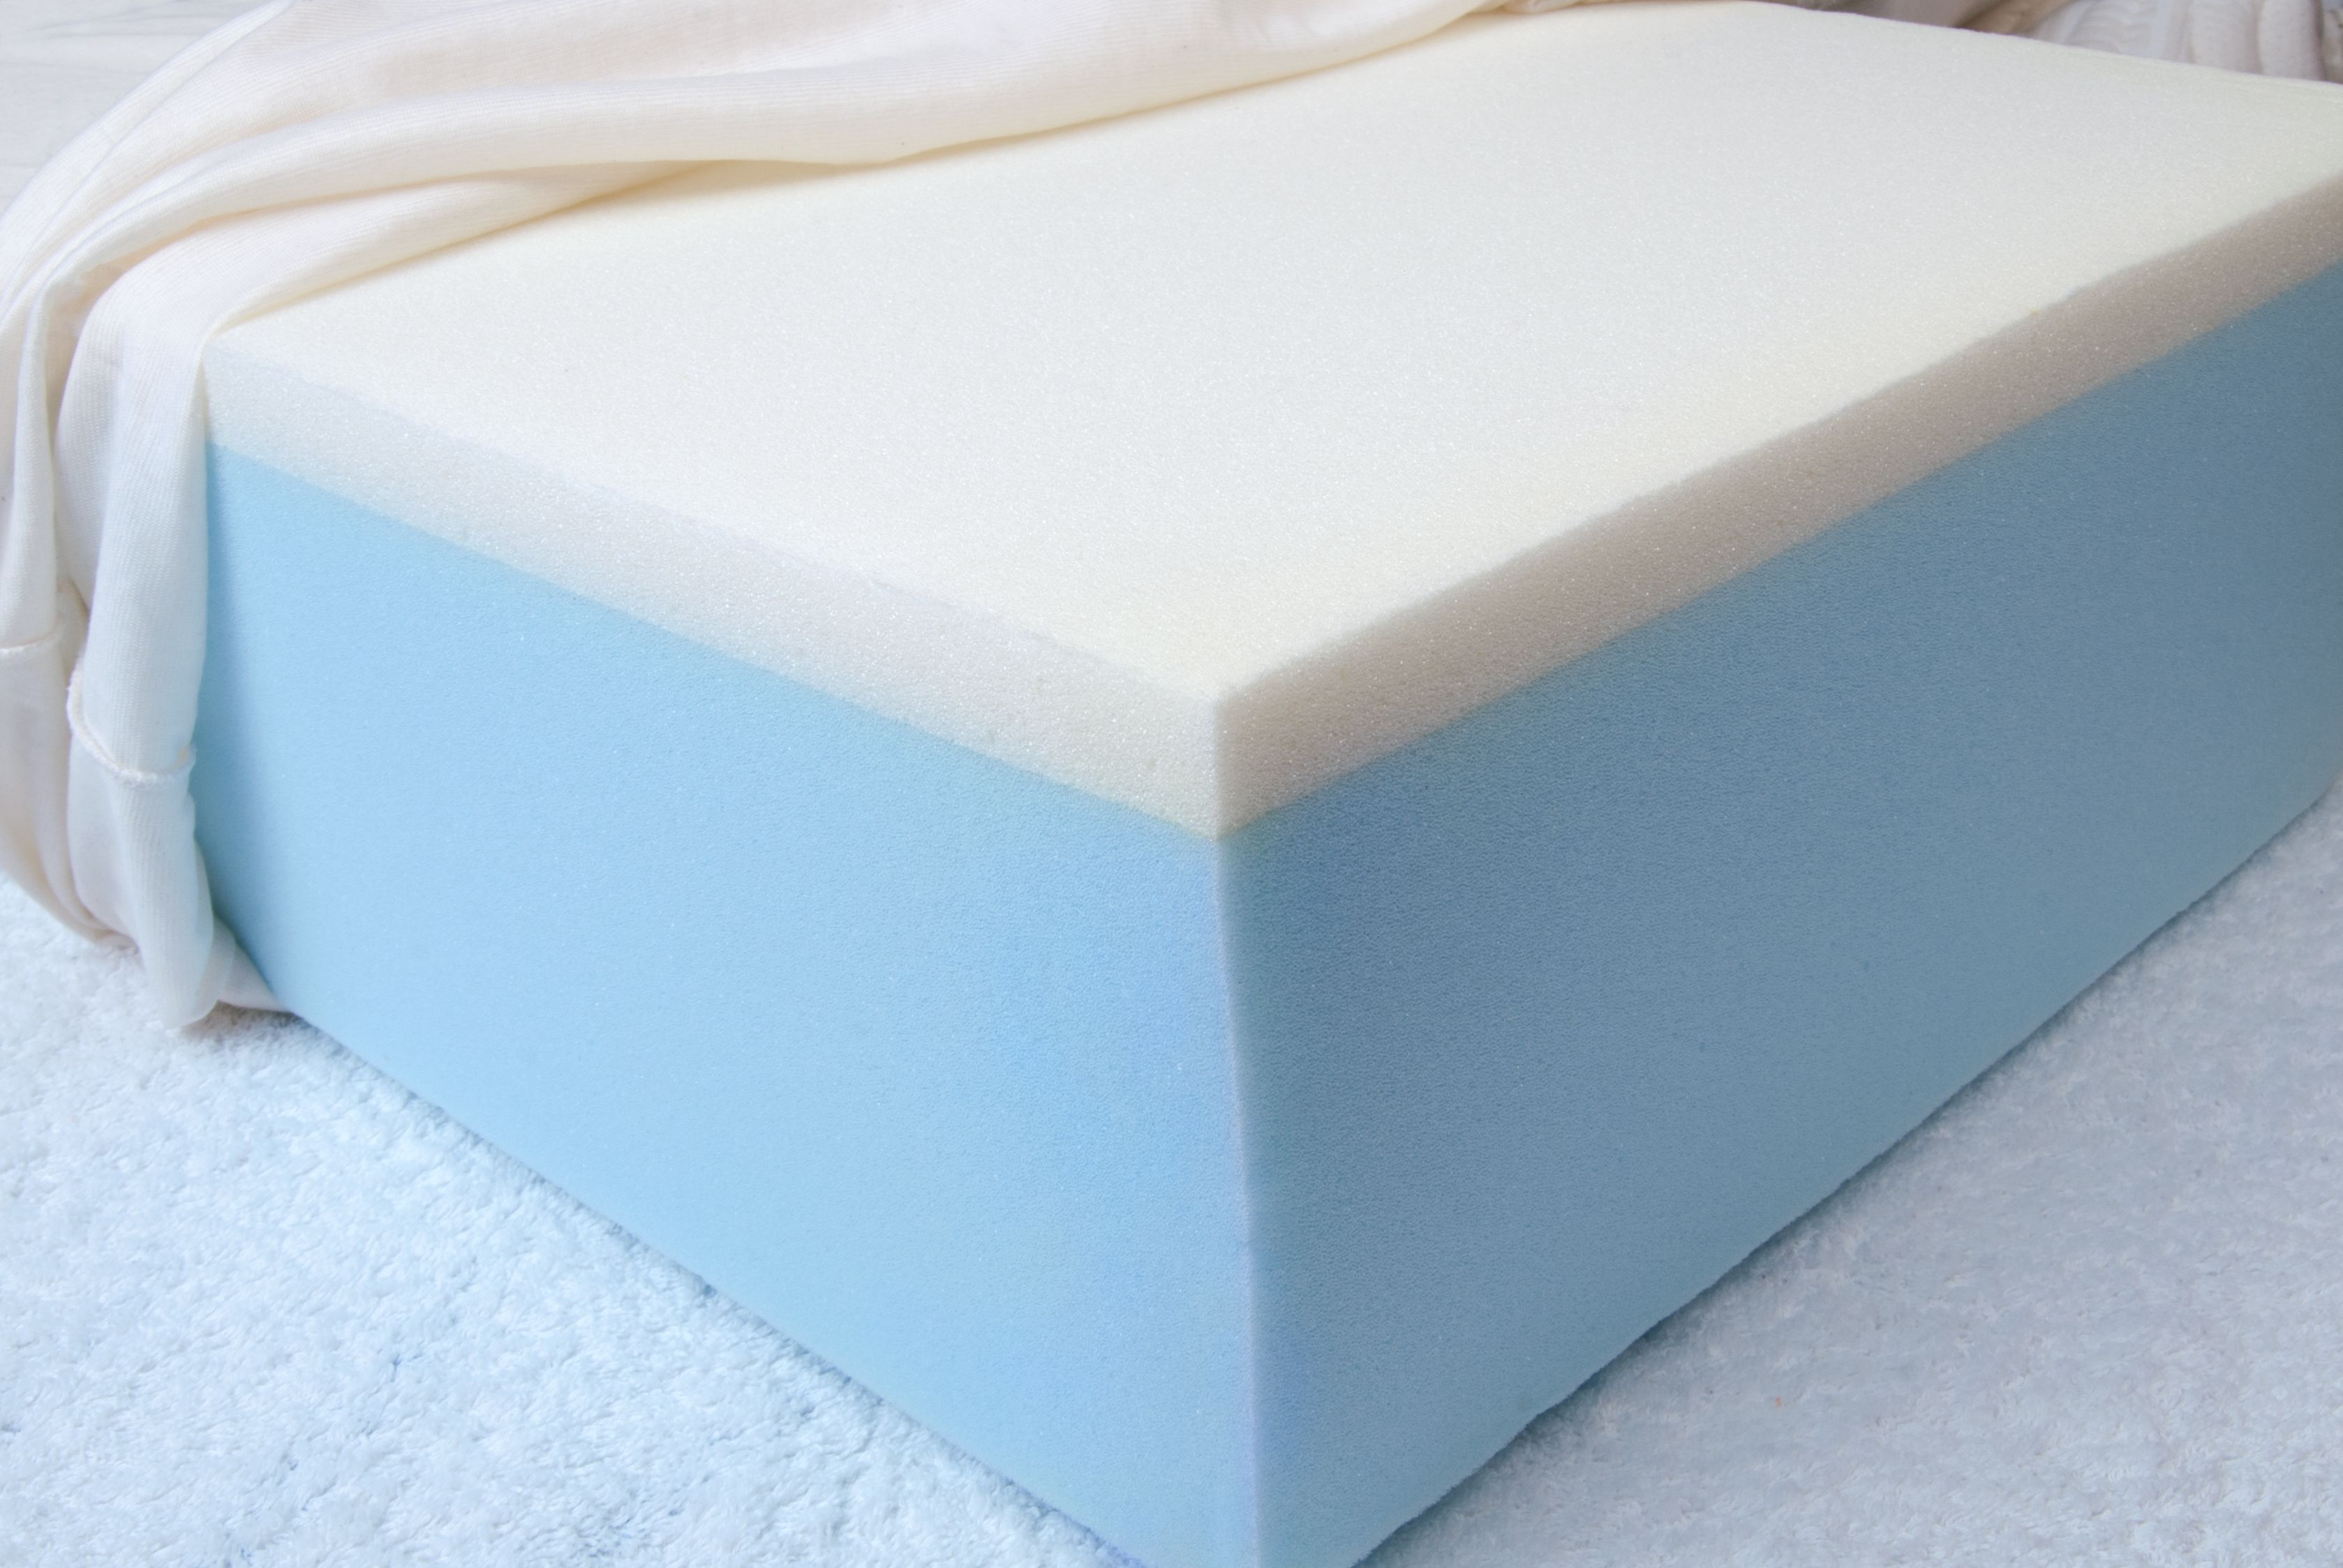 cleaning foam mattress pad